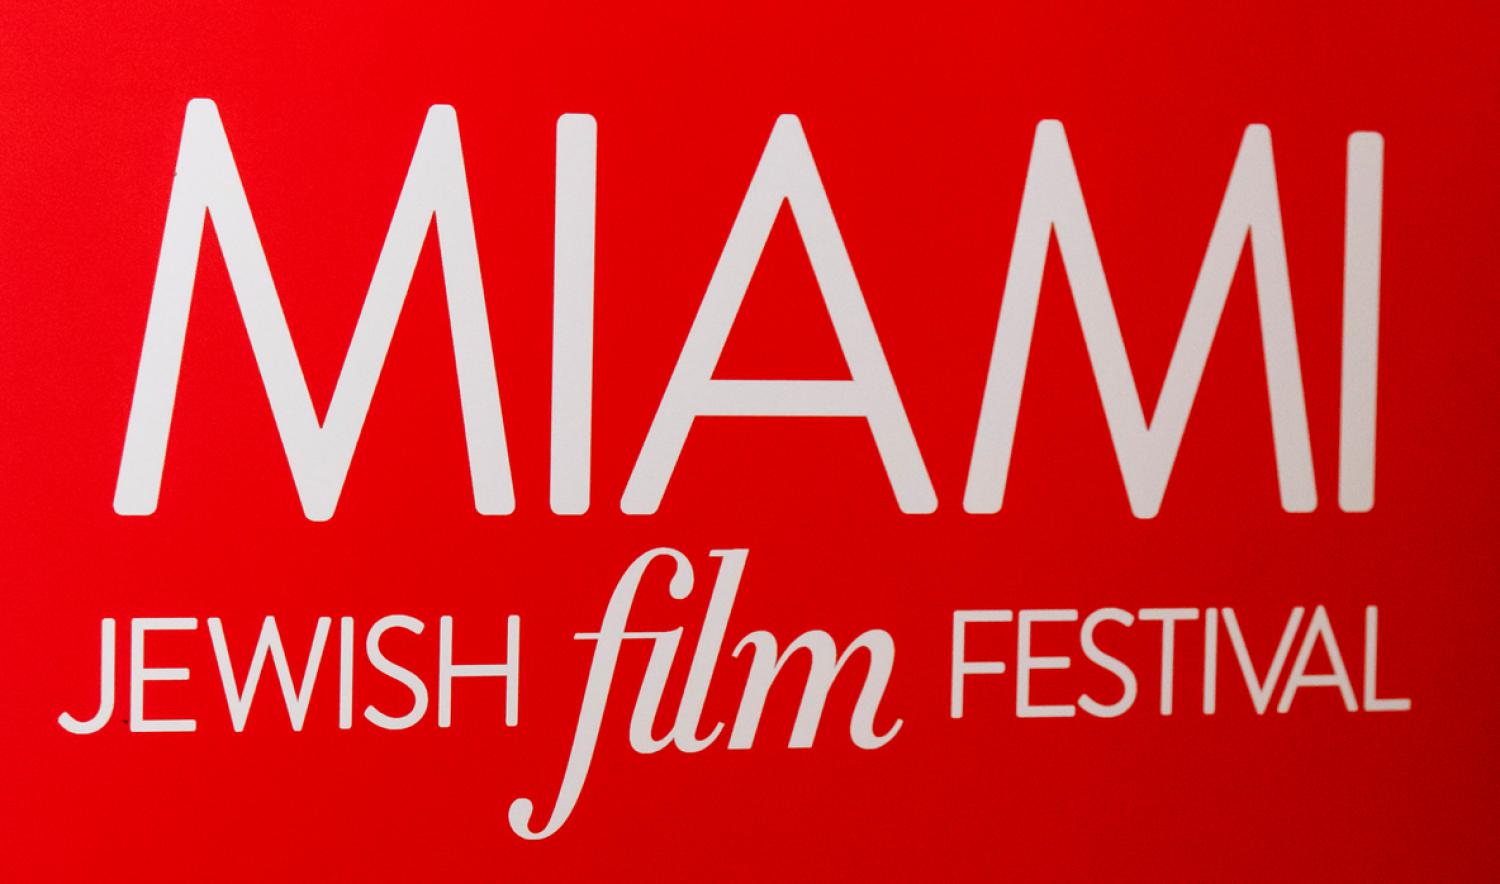 MAZ Gallery Miami Jewish Film Festival